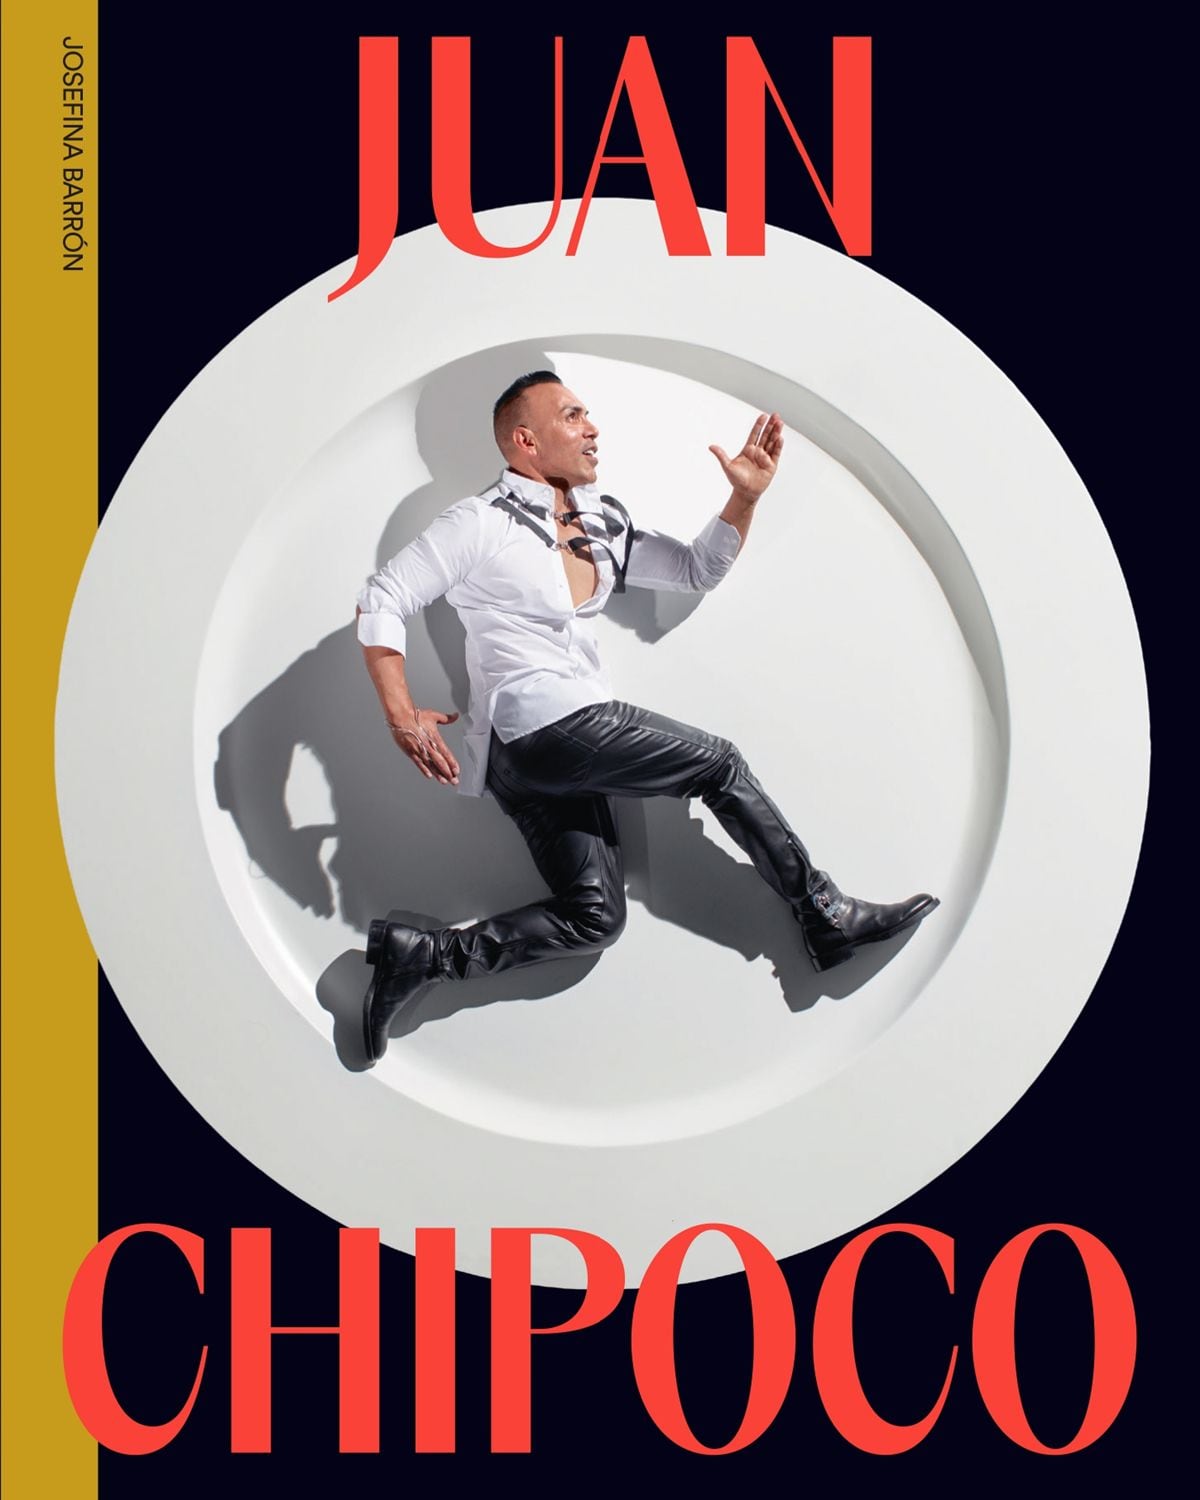 Portada de "Juan Chipoco: la marca detrás de la marca", el libro del chef escrito por la periodista Josefina Barrón.